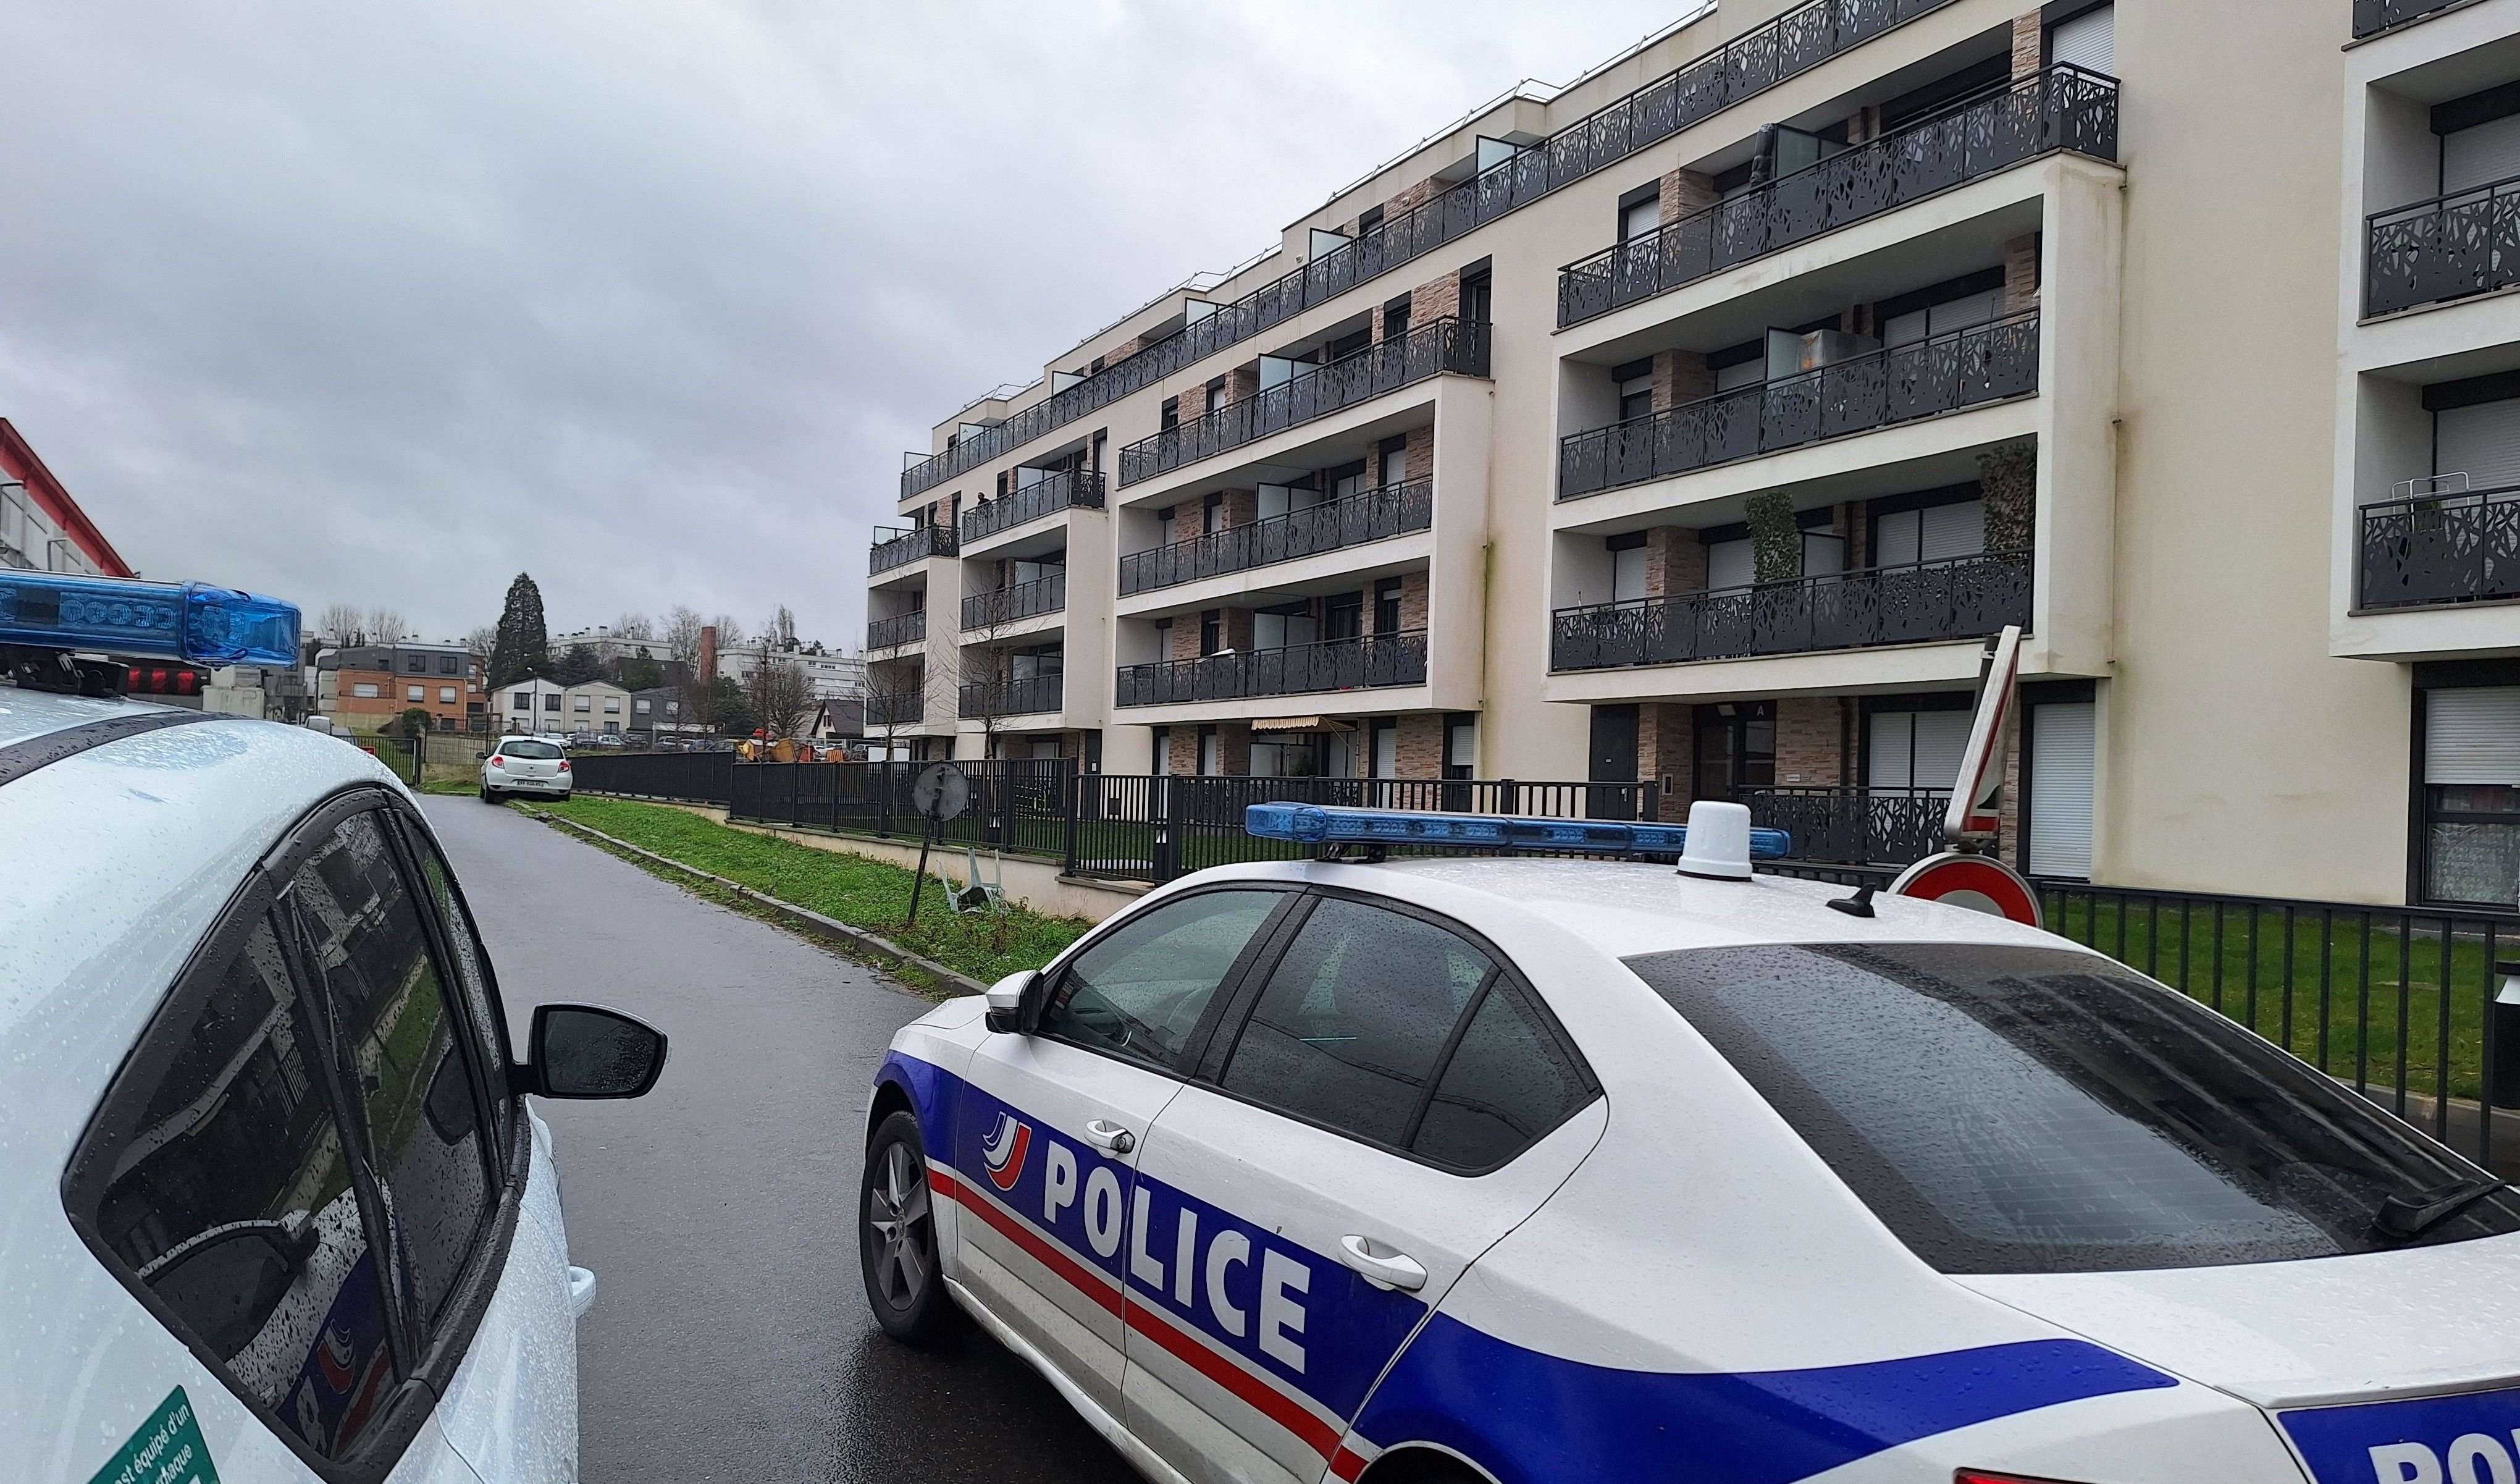 Noisy-le-Grand (Seine-Saint-Denis), ce jeudi 8 février. Des véhicules de police stationnaient toujours devant l'immeuble où a été abattu, la veille, un homme de 26 ans venu armé pour s'en prendre à son ex-compagne. LP/Rémy Videau